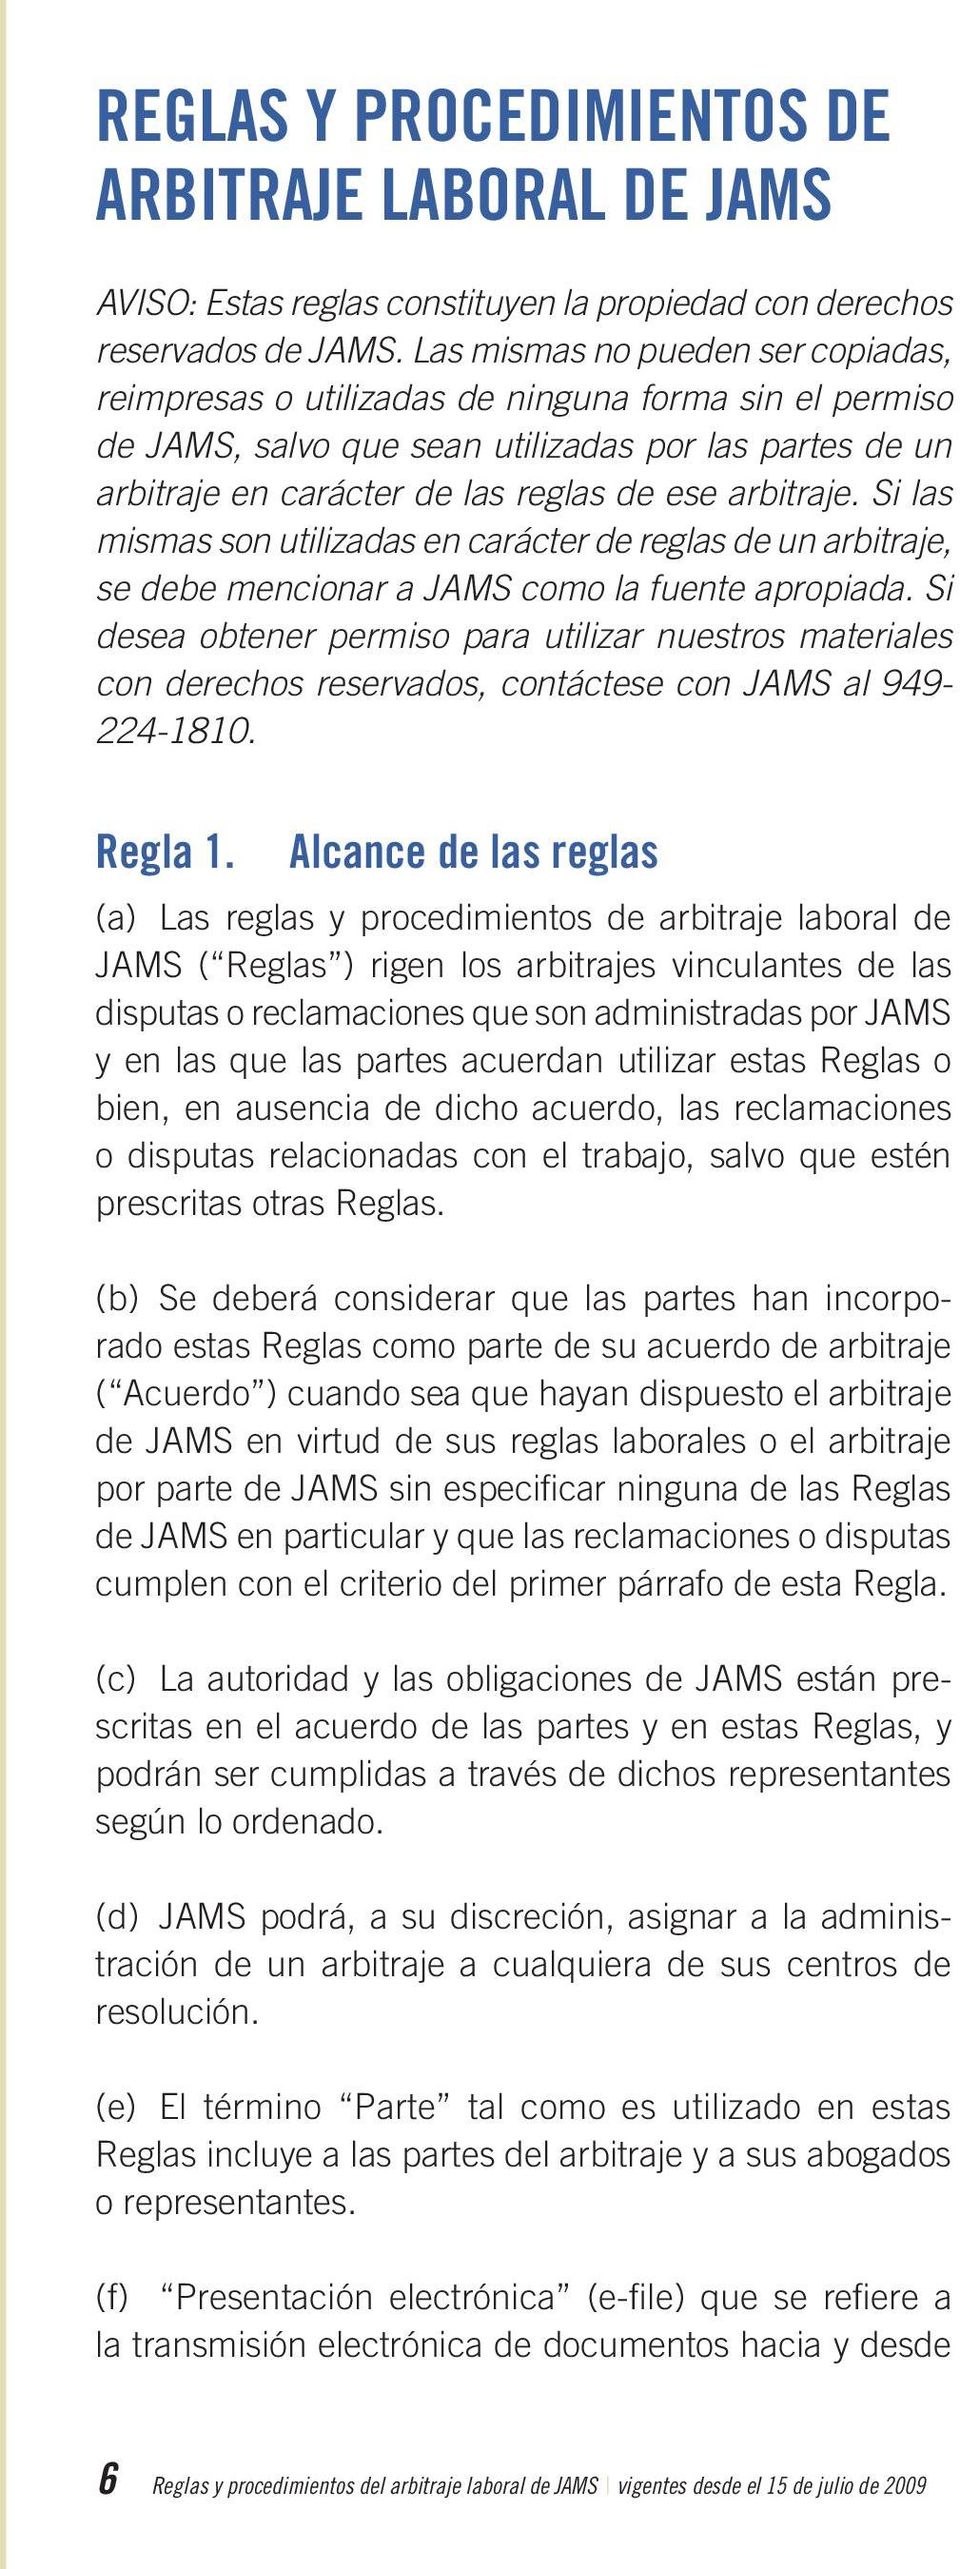 Si las mismas son utilizadas en carácter de reglas de un arbitraje, se debe mencionar a JAMS como la fuente apropiada.